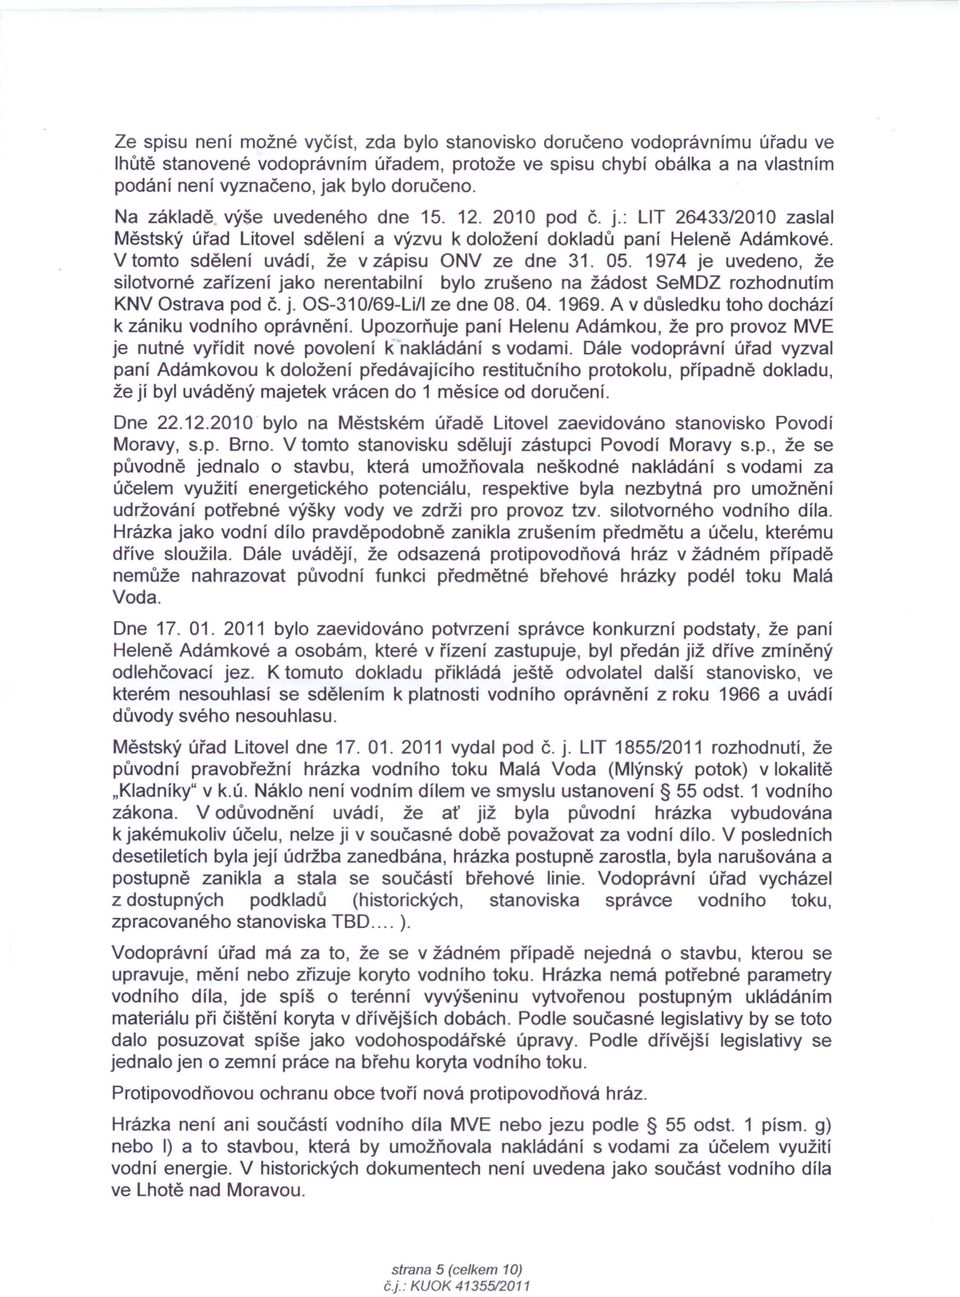 V tomto sdělení uvádí, že v zápisu ONV ze dne 31. 05. 1974 je uvedeno, že silotvorné zařízení jako nerentabilní bylo zrušeno na žádost SeMDZ rozhodnutím KNV Ostrava pod č. j. OS-310/69-Li/1 ze dne 08.